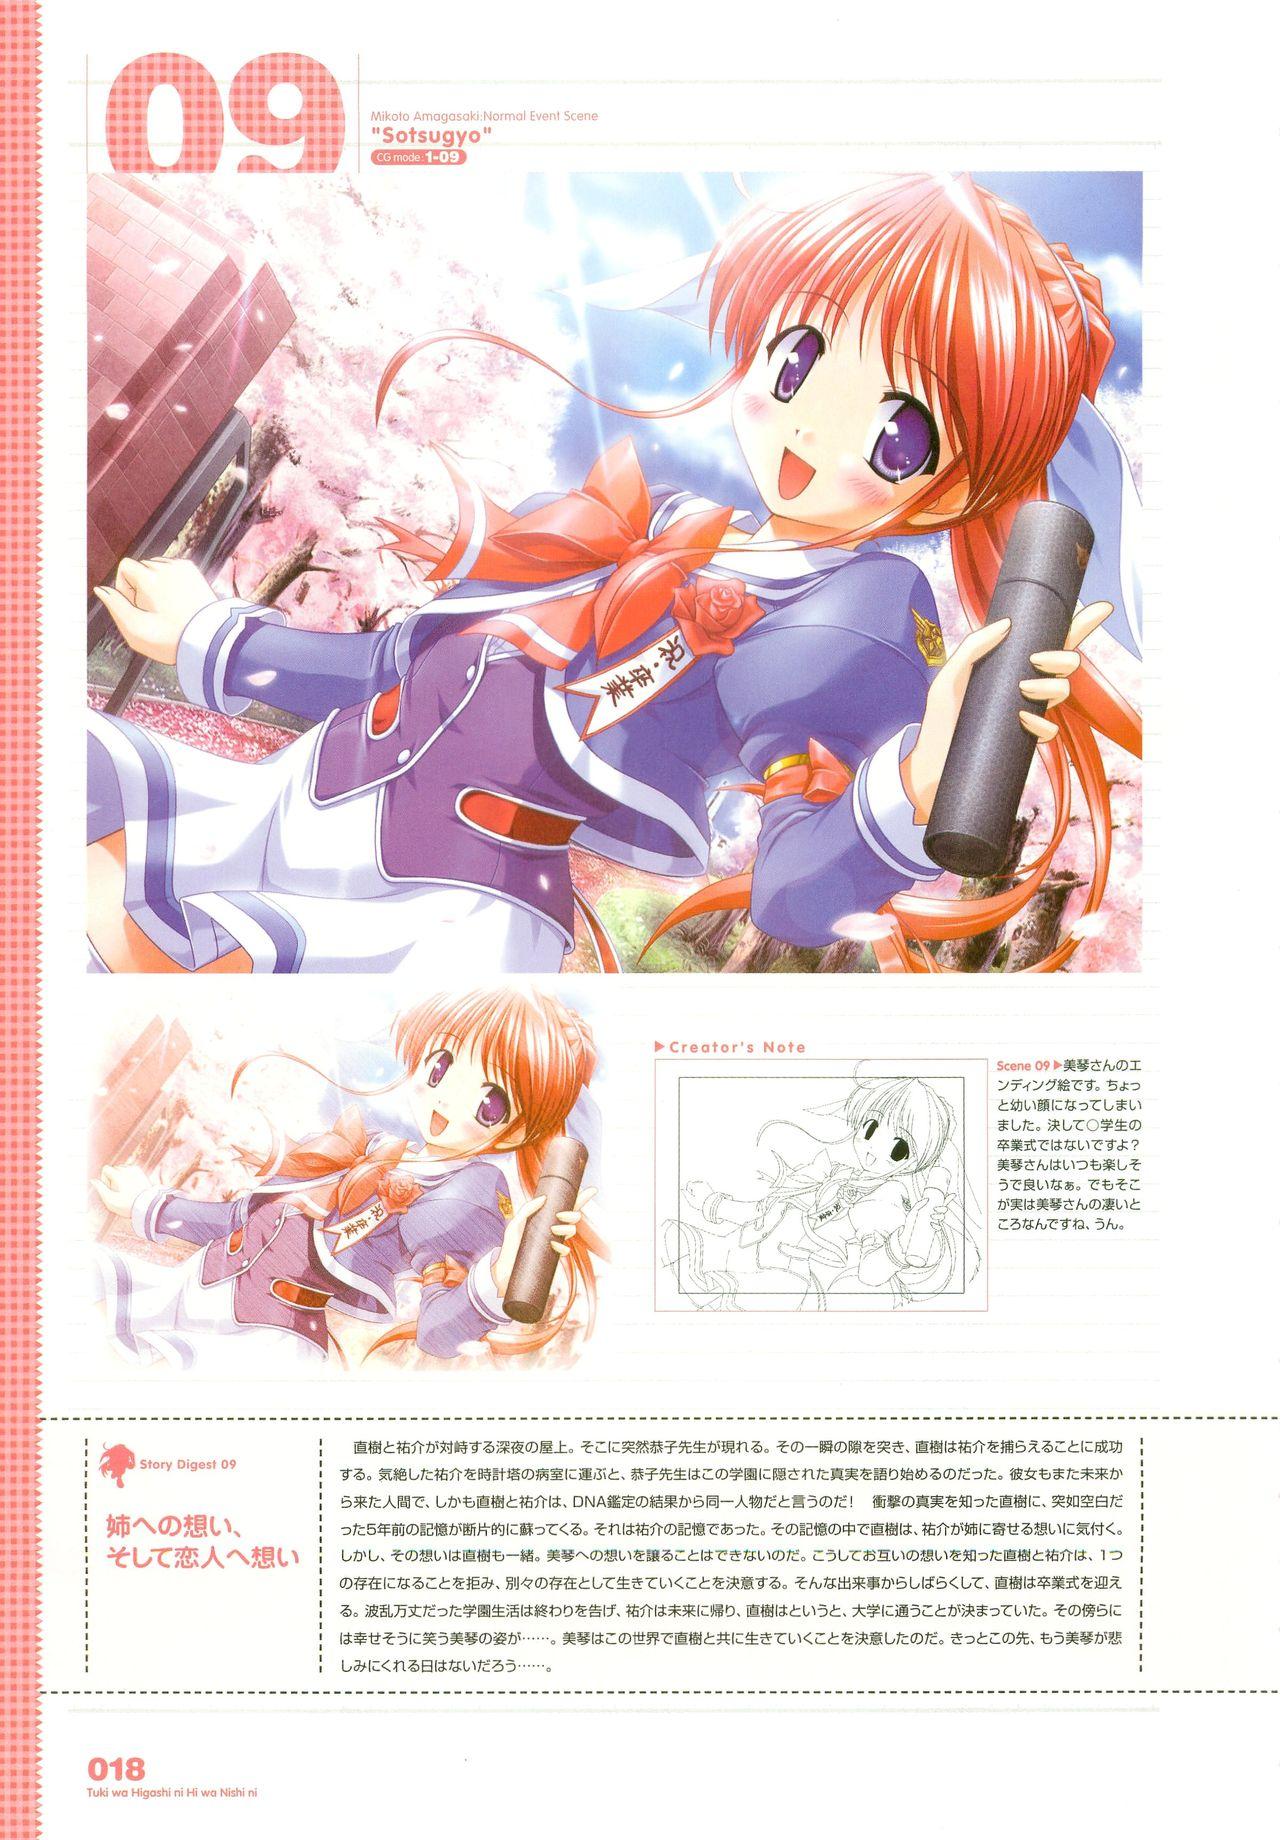 Tsuki wa Higashi ni Hi wa Nishi ni - Operation Sanctuary - Visual Fan Book Shokai Ban 26